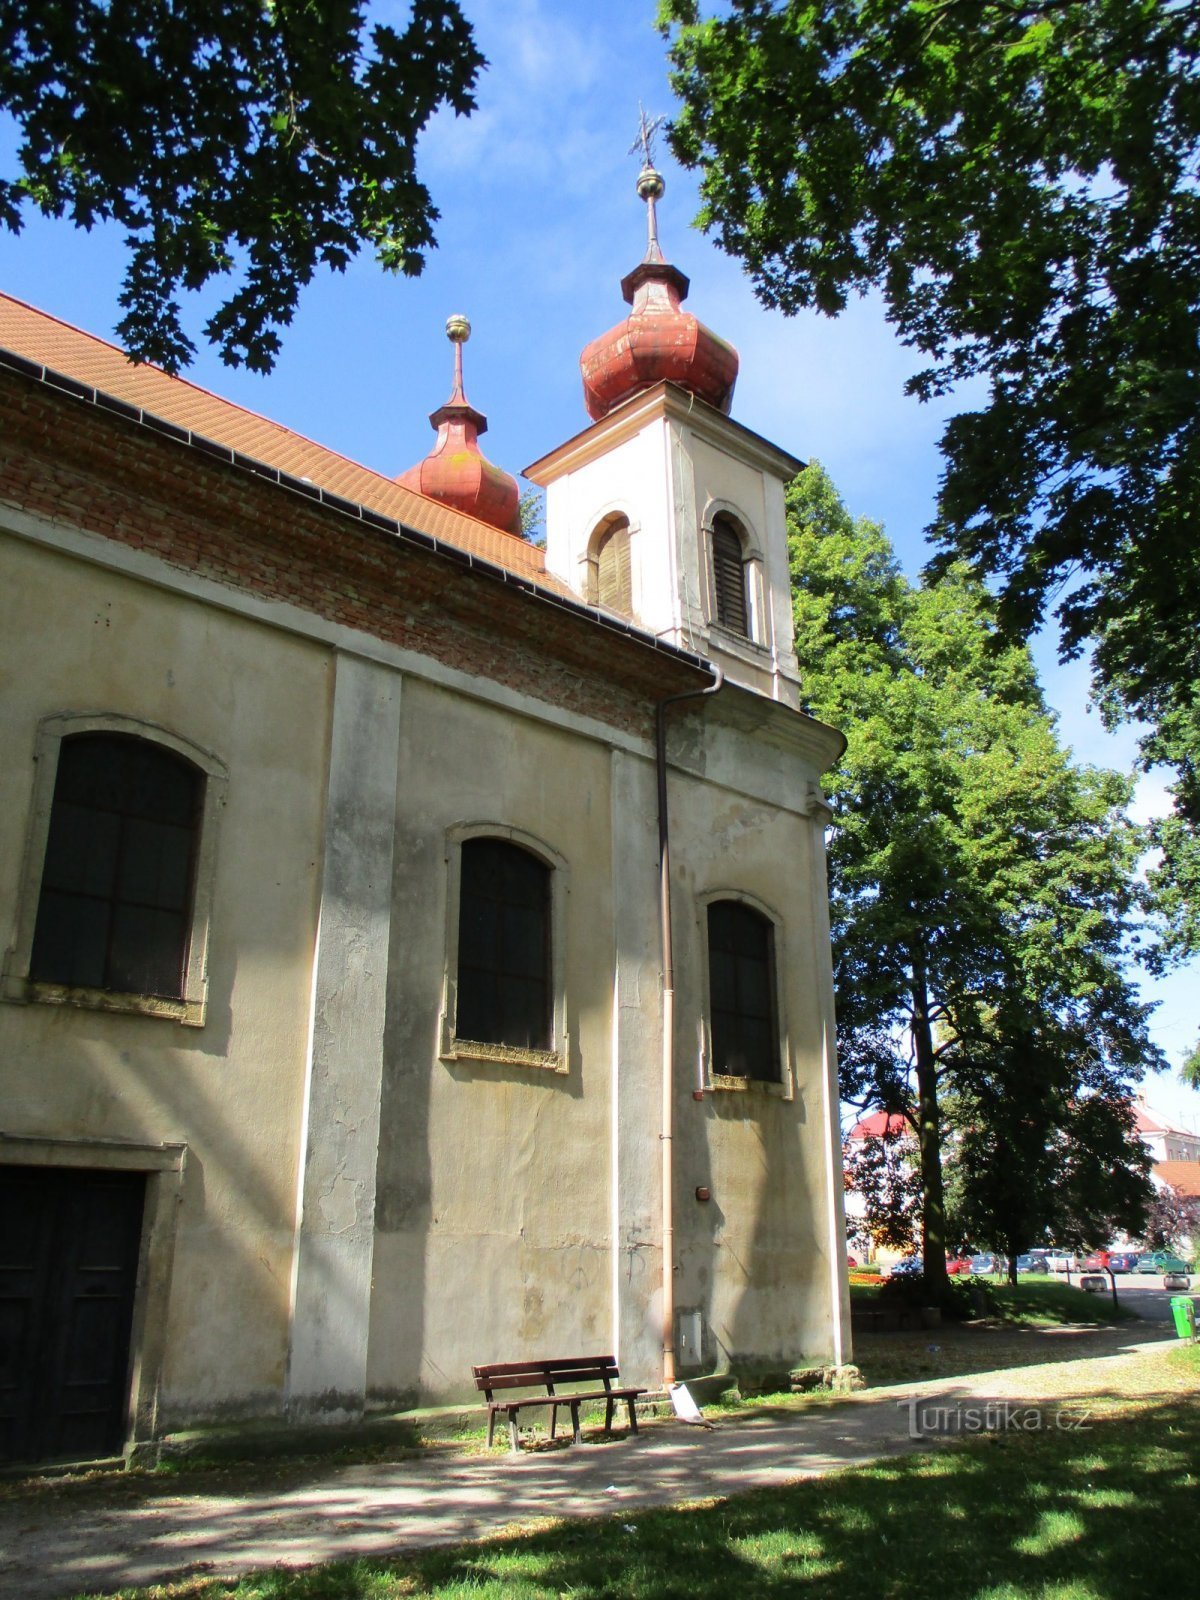 Church of the Holy Trinity (Nový Bydžov, 5.7.2020 July XNUMX)